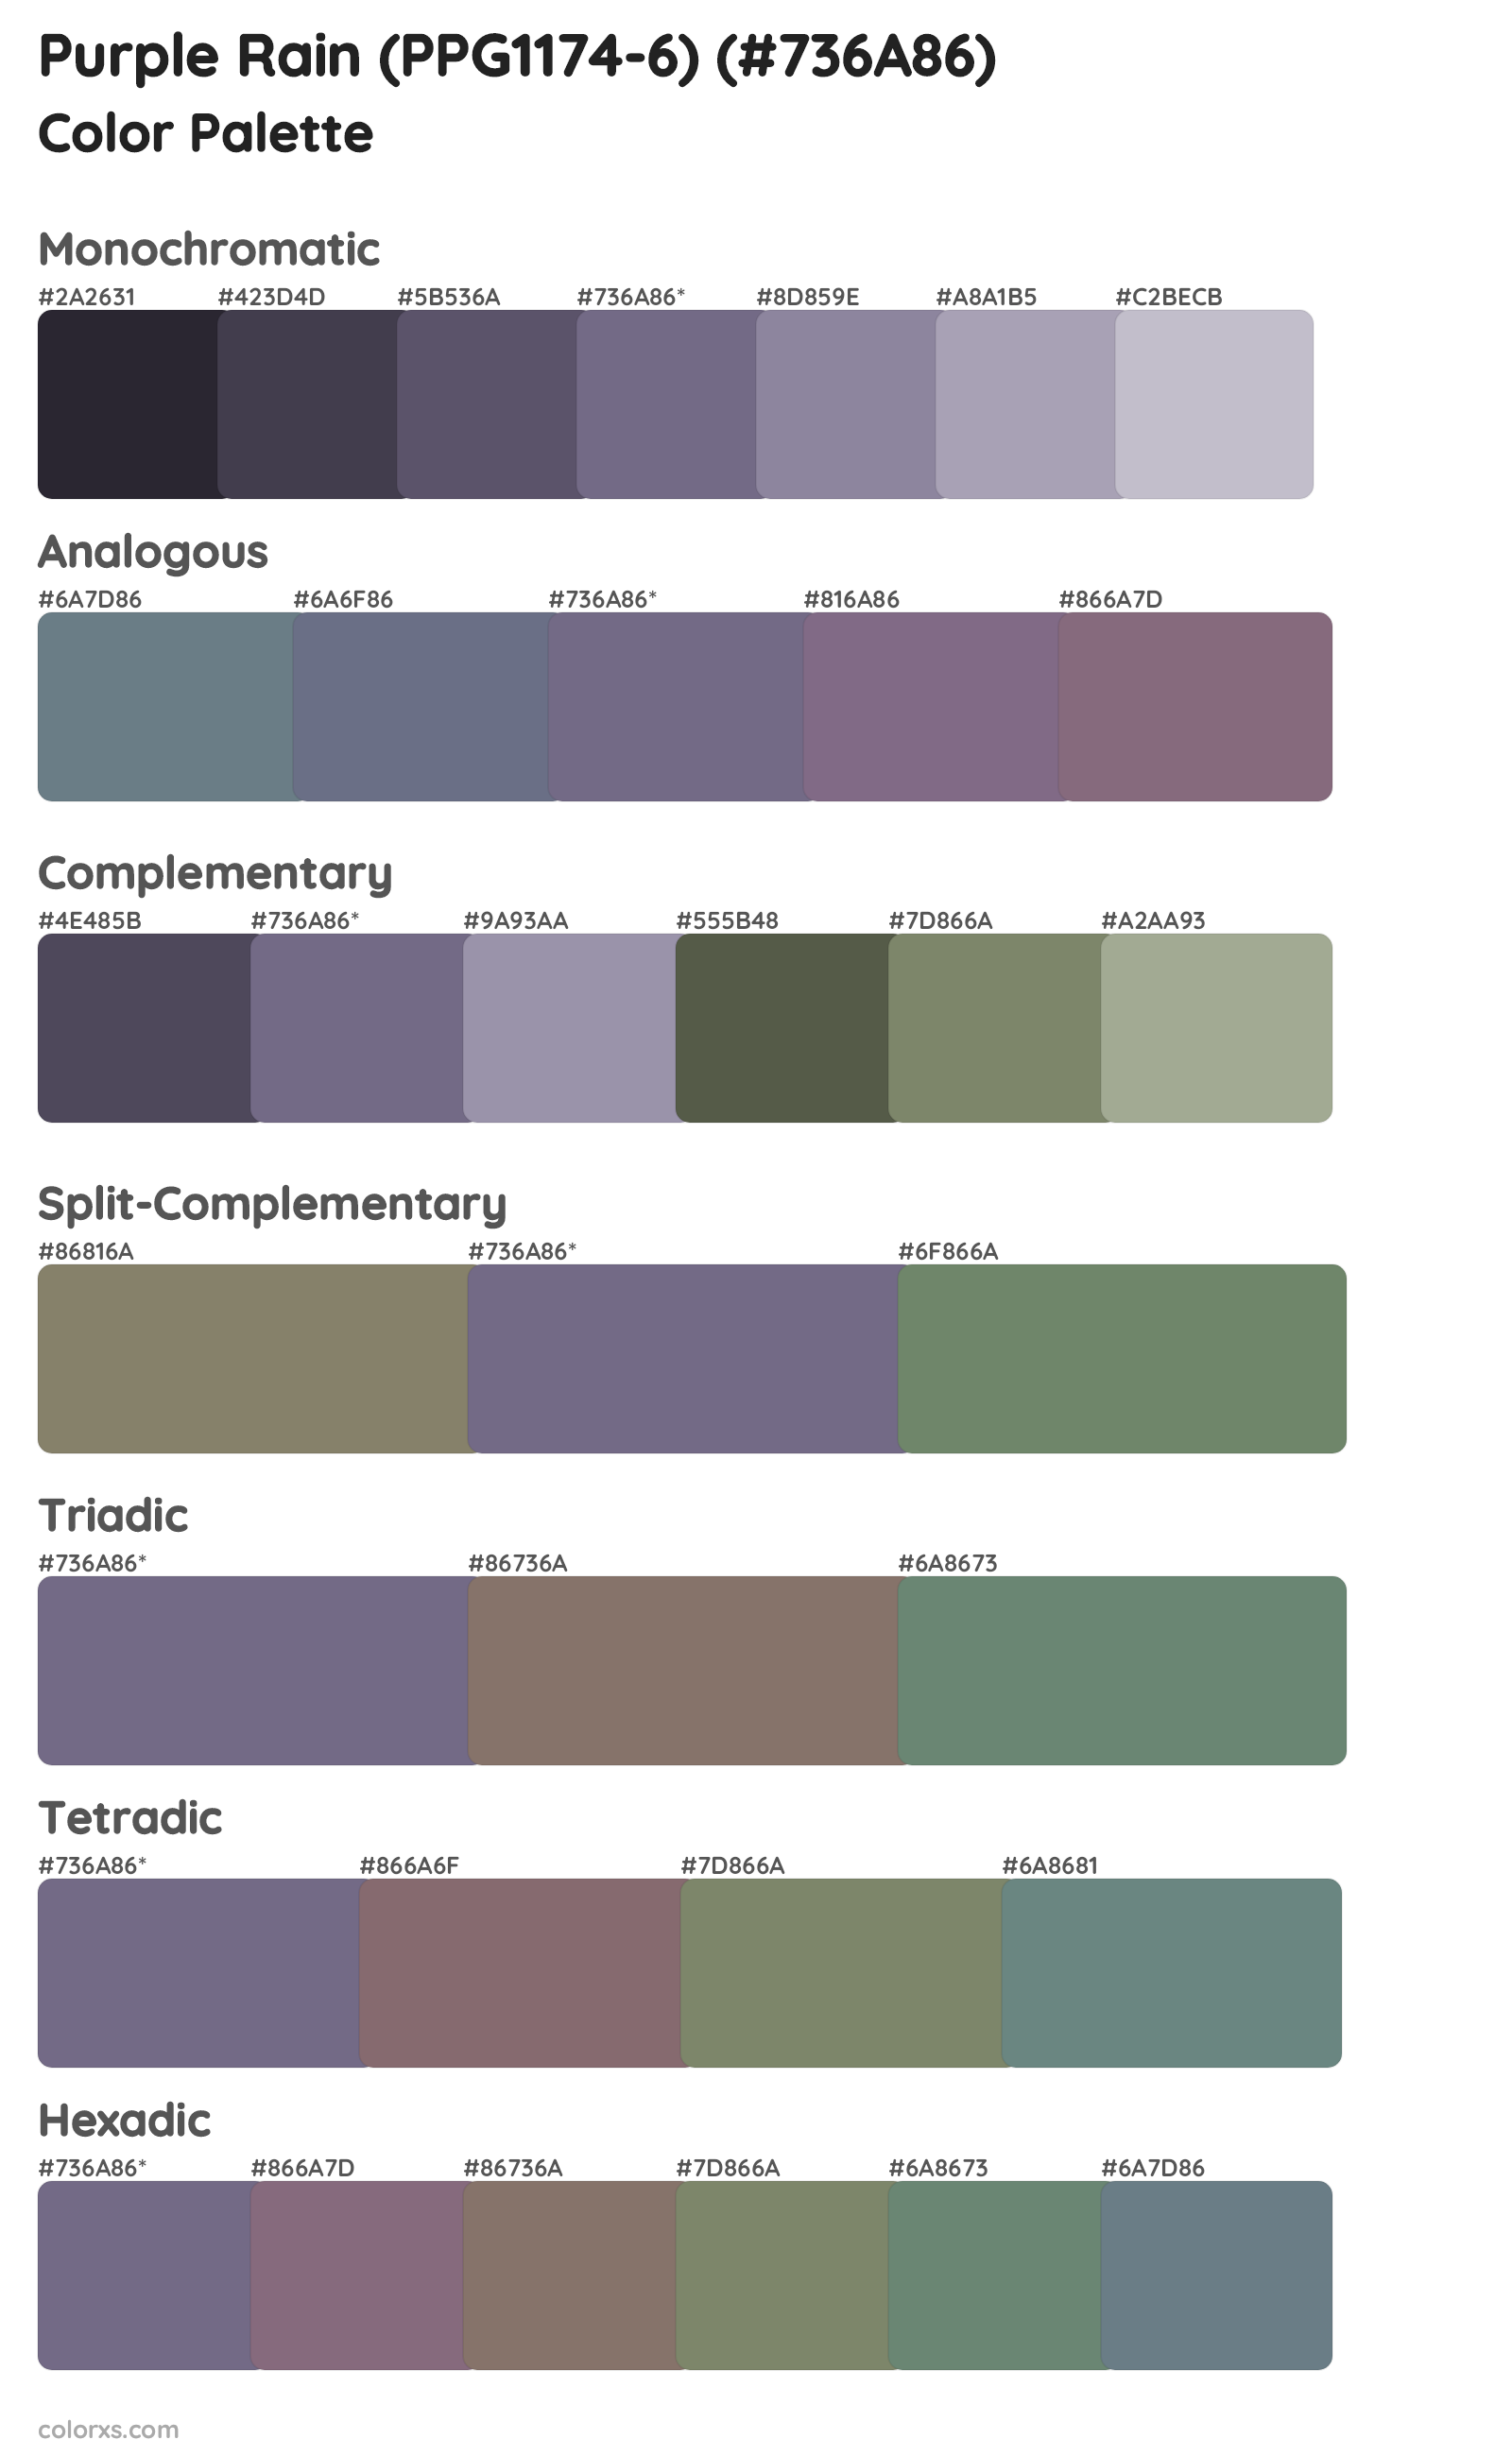 Purple Rain (PPG1174-6) Color Scheme Palettes